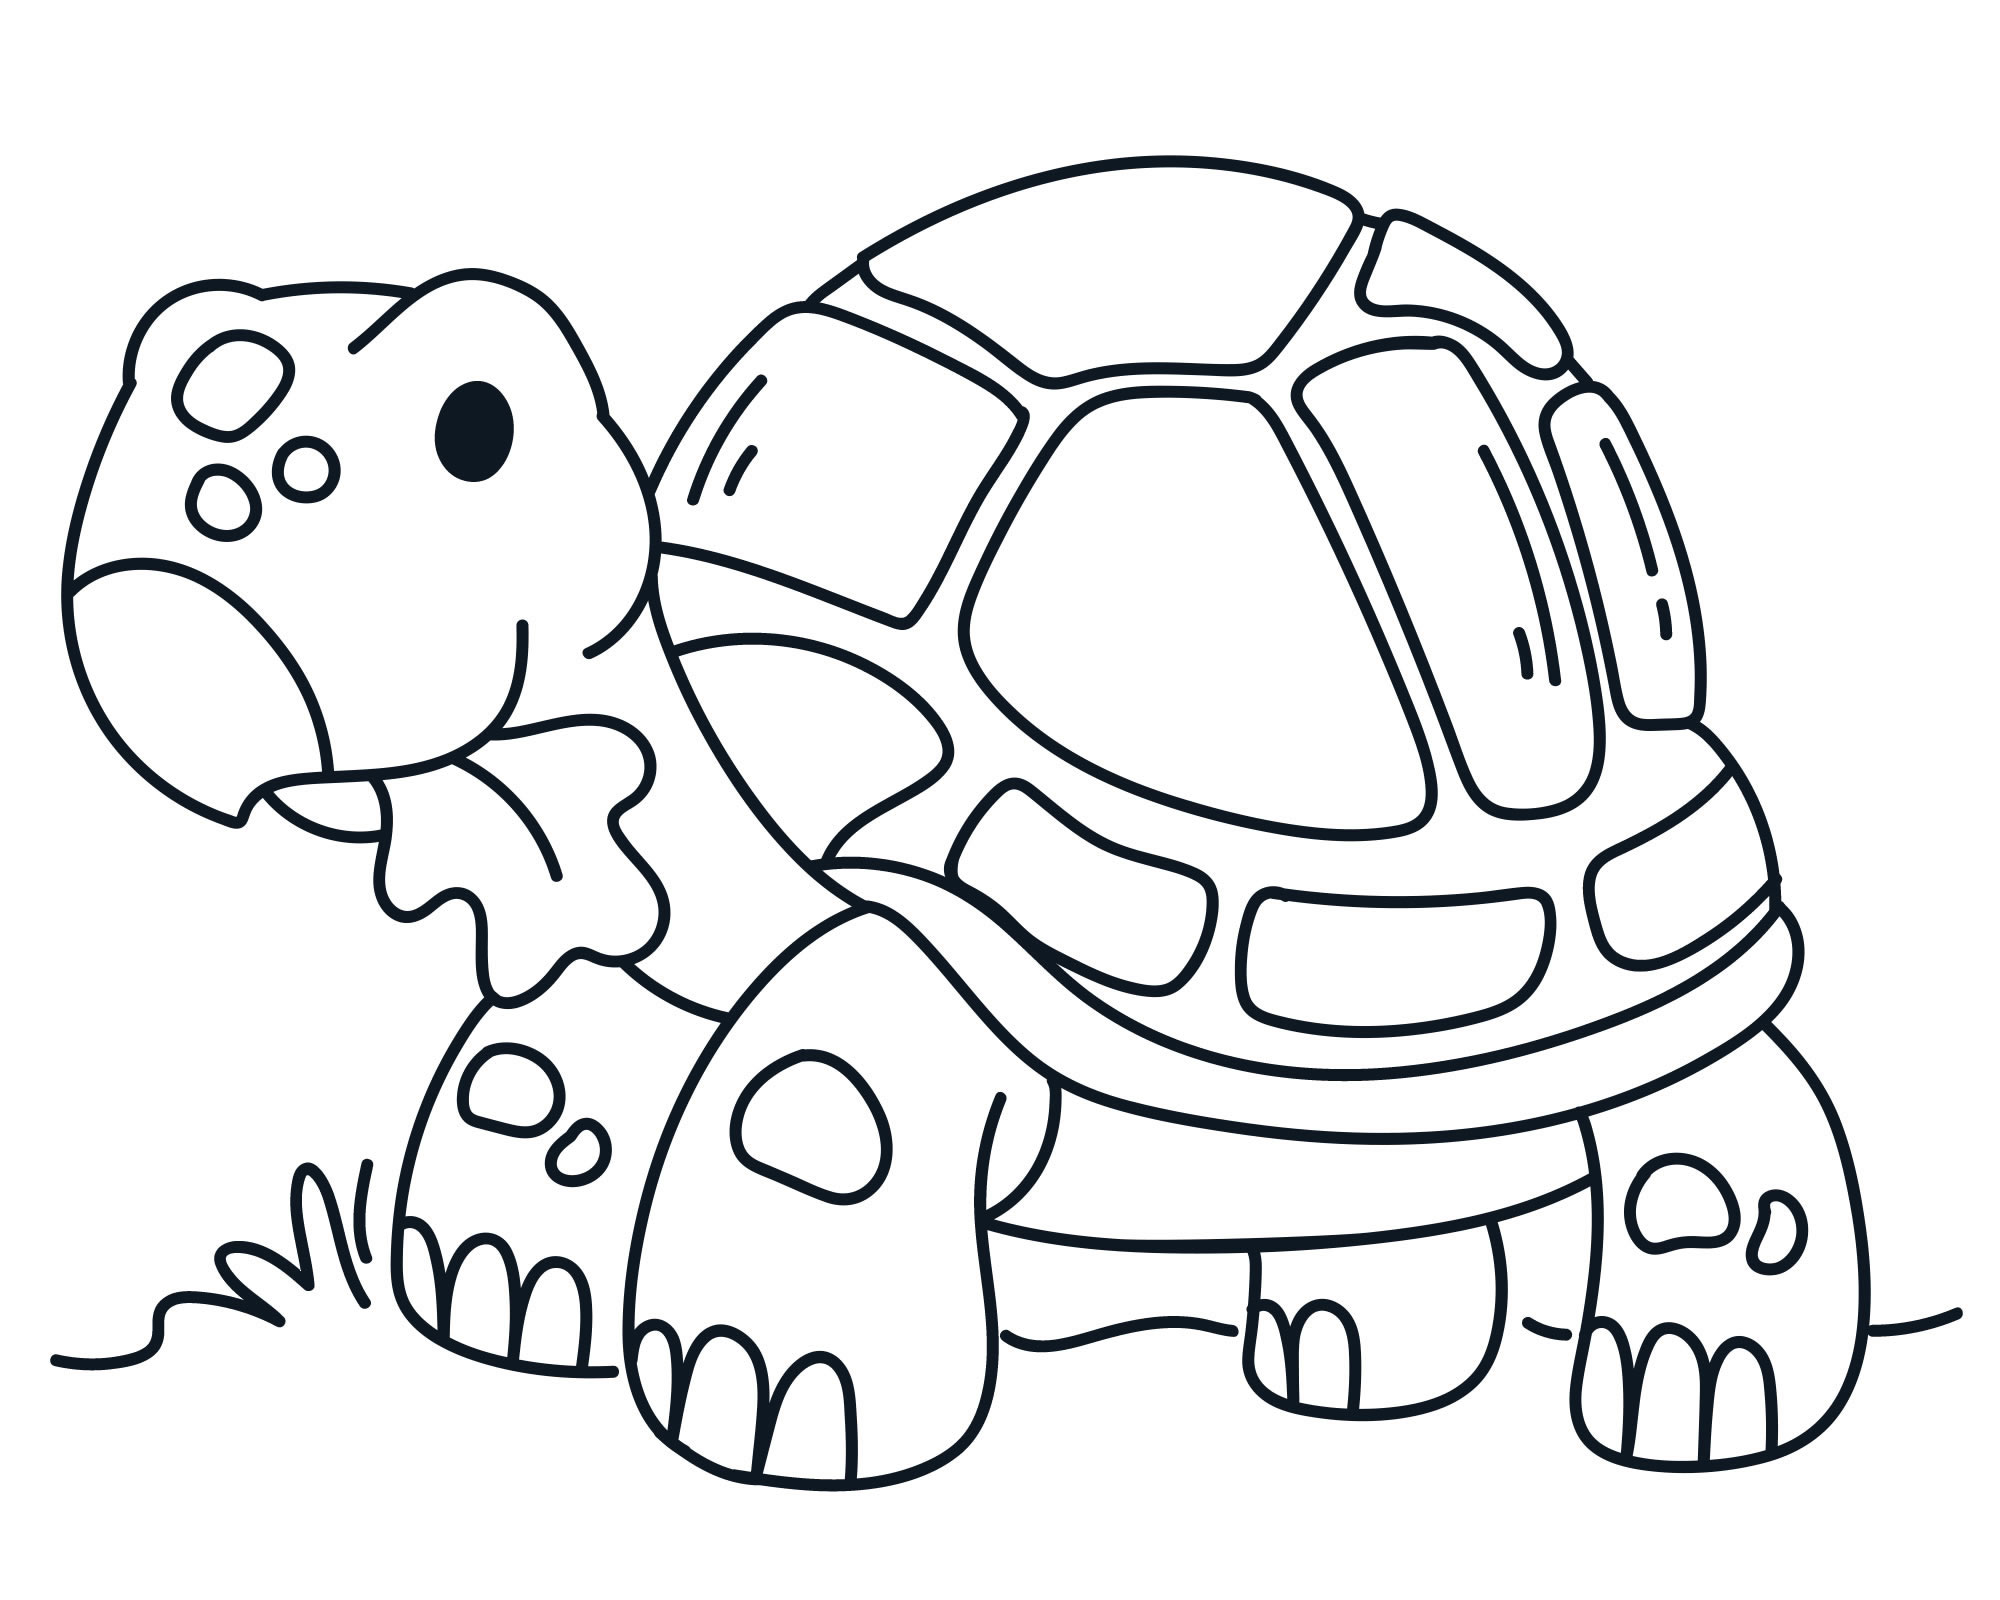 Красивая черепаха — раскраска для детей. Распечатать бесплатно.